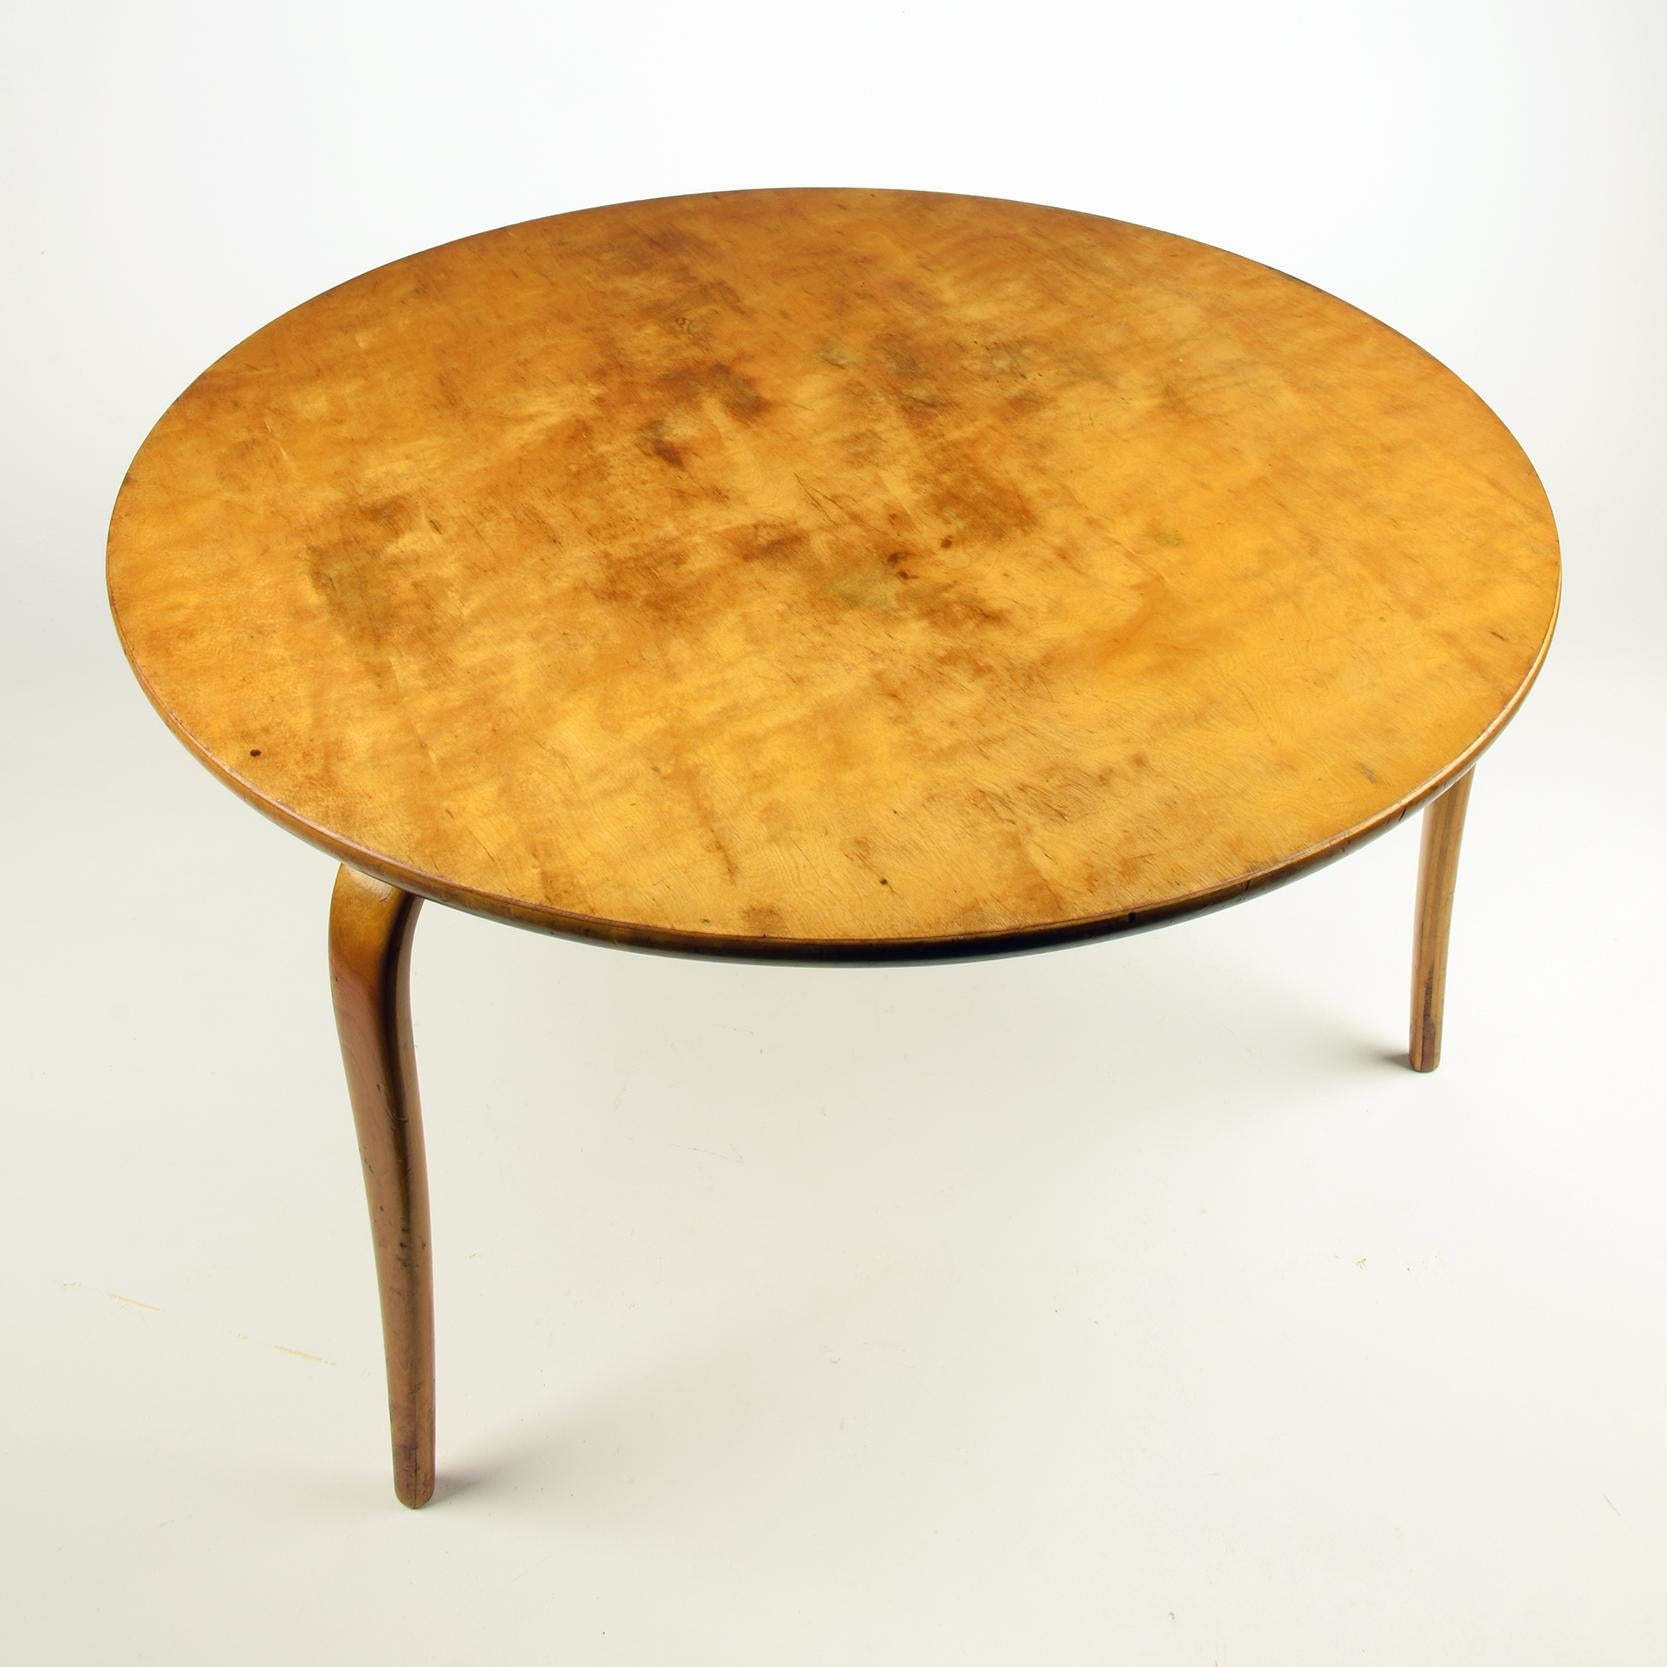 Suédois Table « Annika » de Bruno Mathsson, conçue en 1936, magnifique exemple précoce en vente